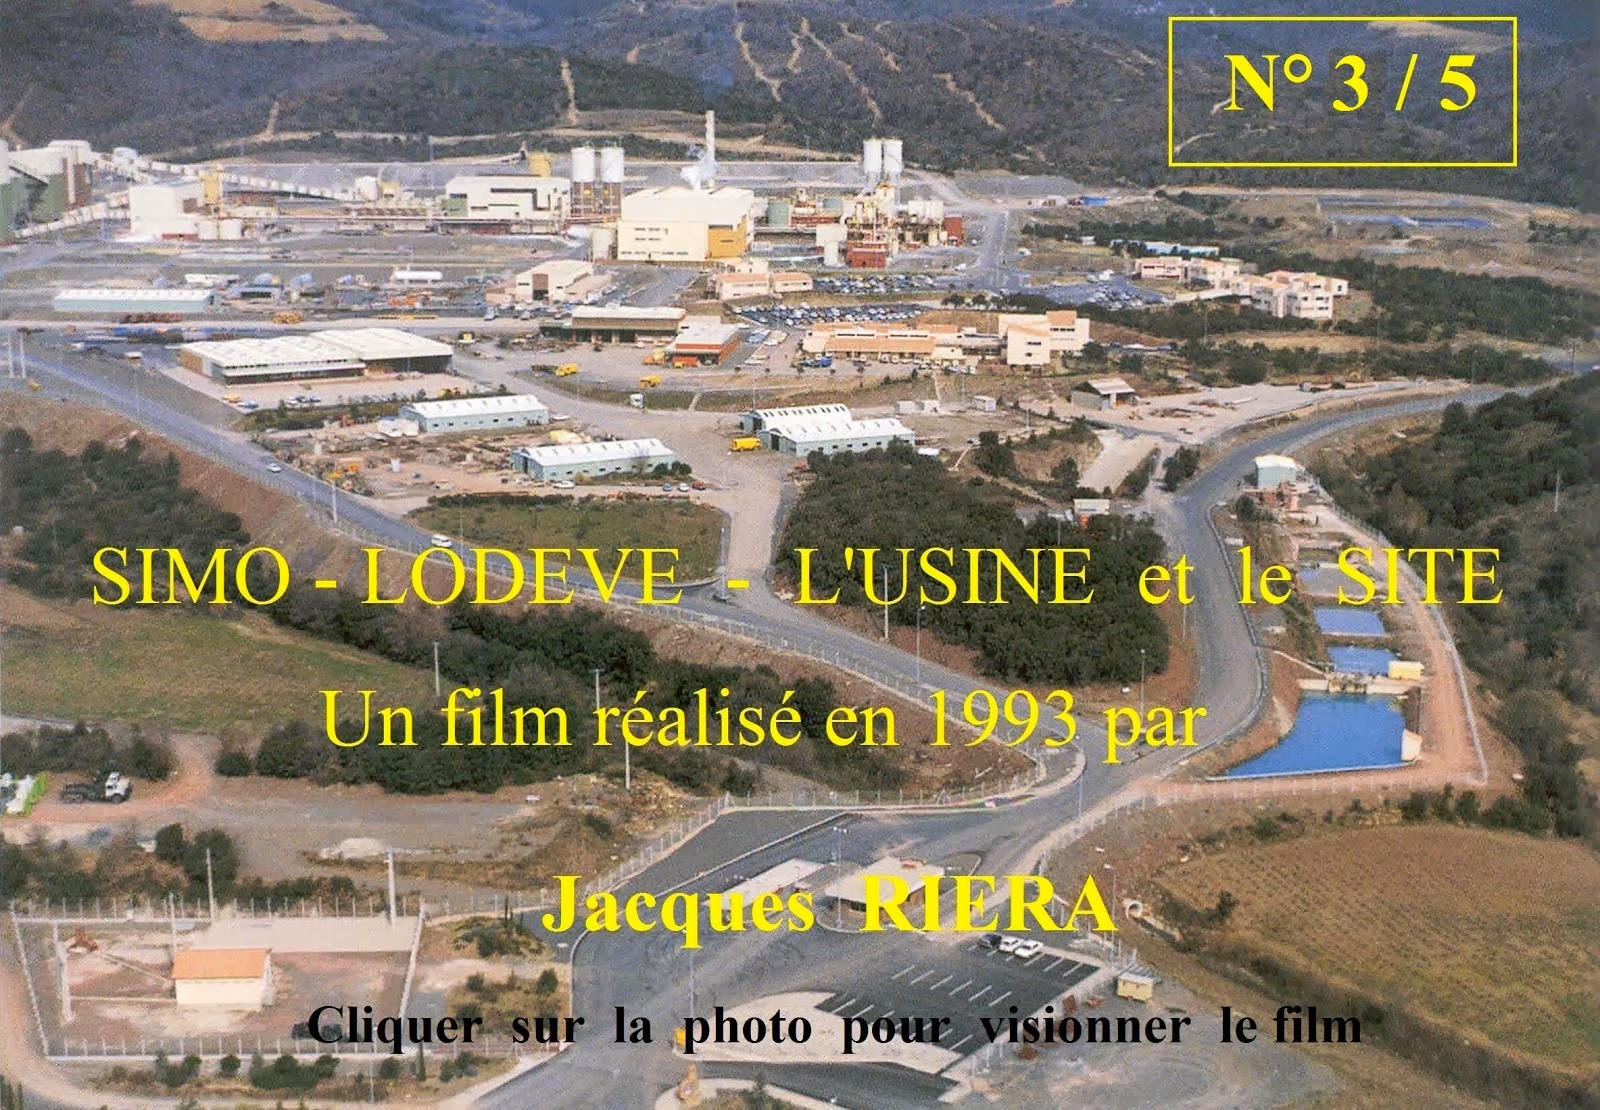 3/5 - La SIMO Lodève 1993 - Un film de Jacques Riéra - Cliquer sur la photo pour visionner